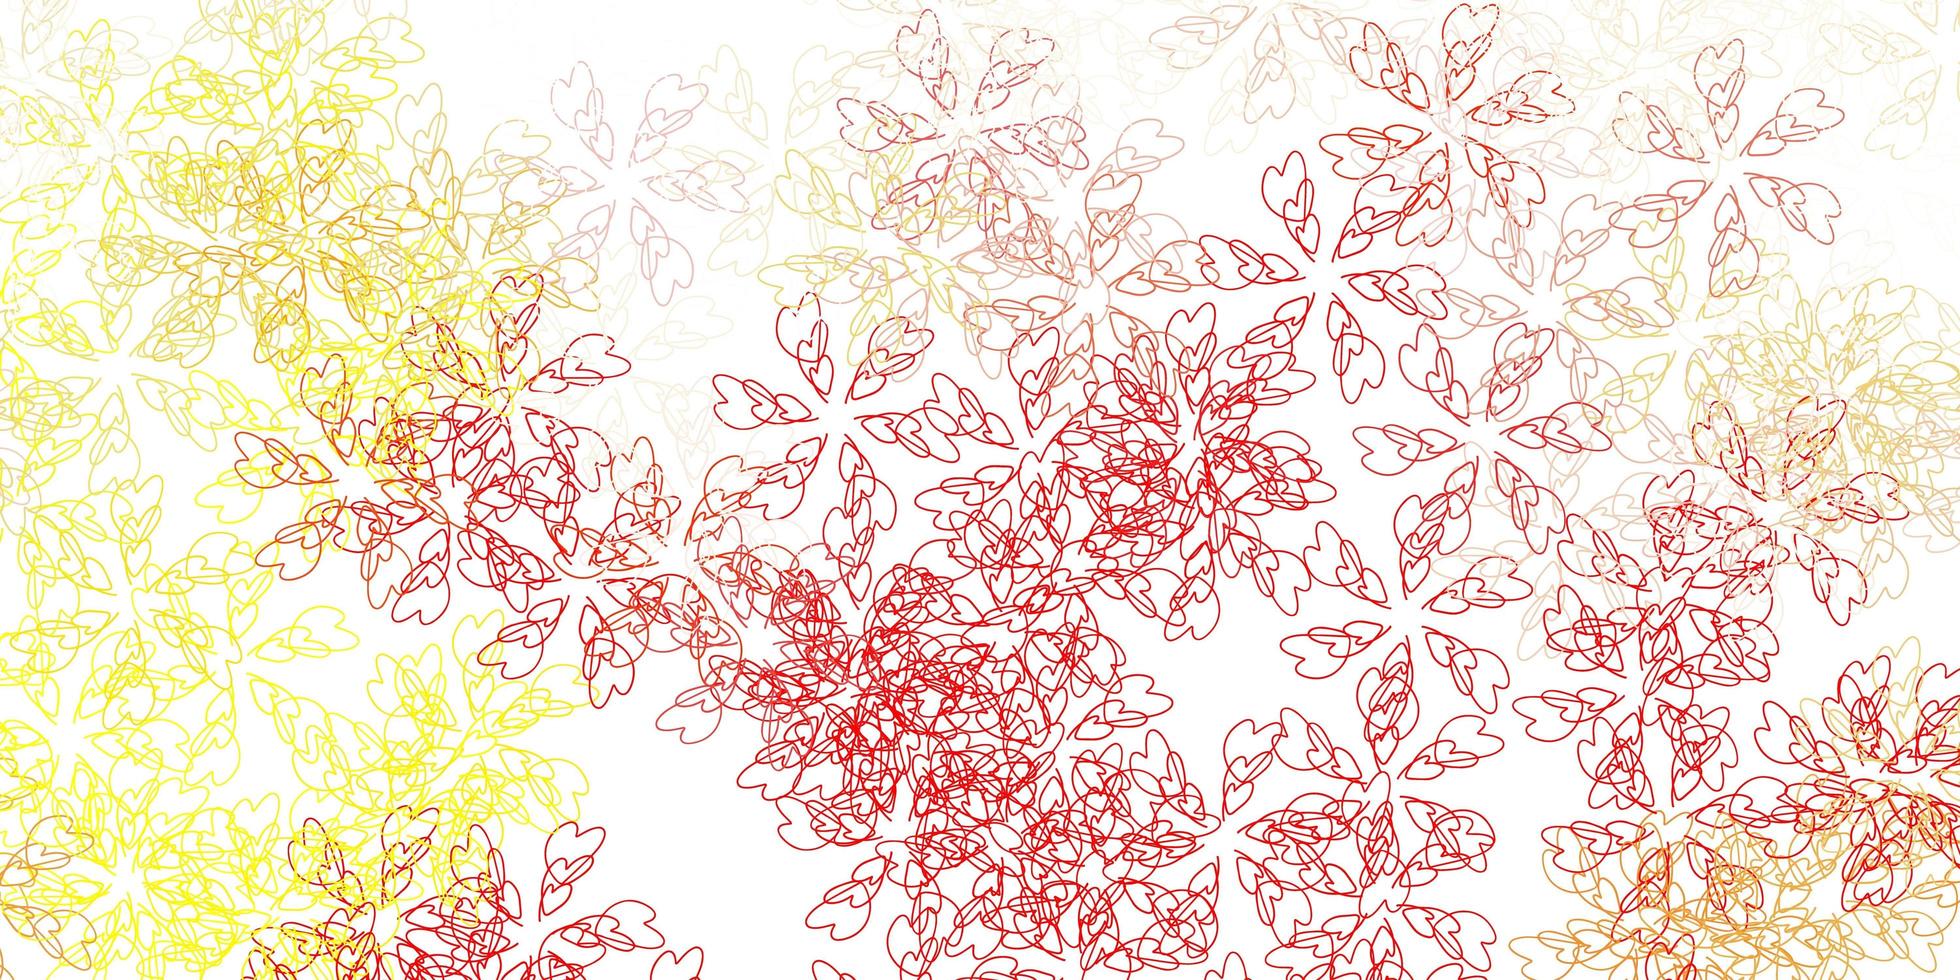 fundo abstrato luz vermelha, amarela do vetor com folhas.